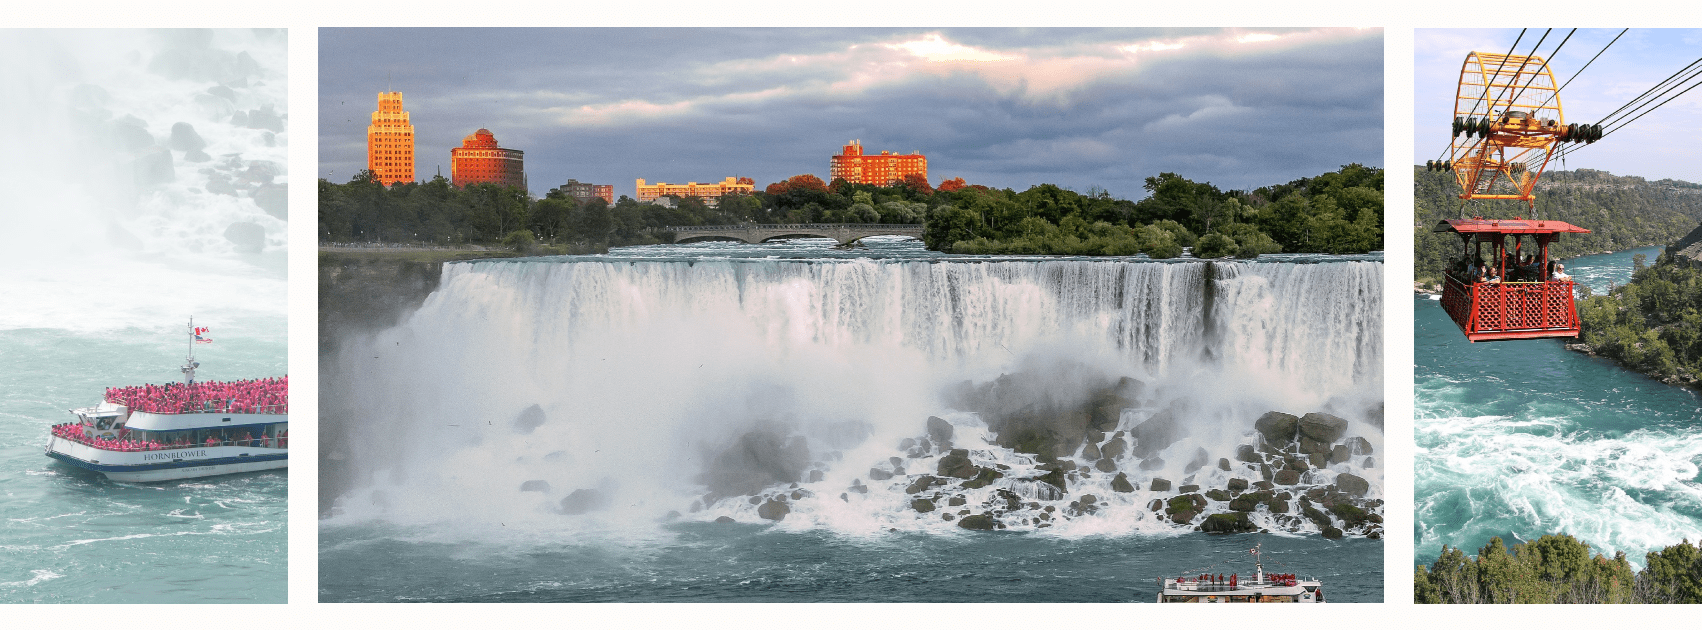 Niagarafalls hotspot for Airbnb and short-term rentals